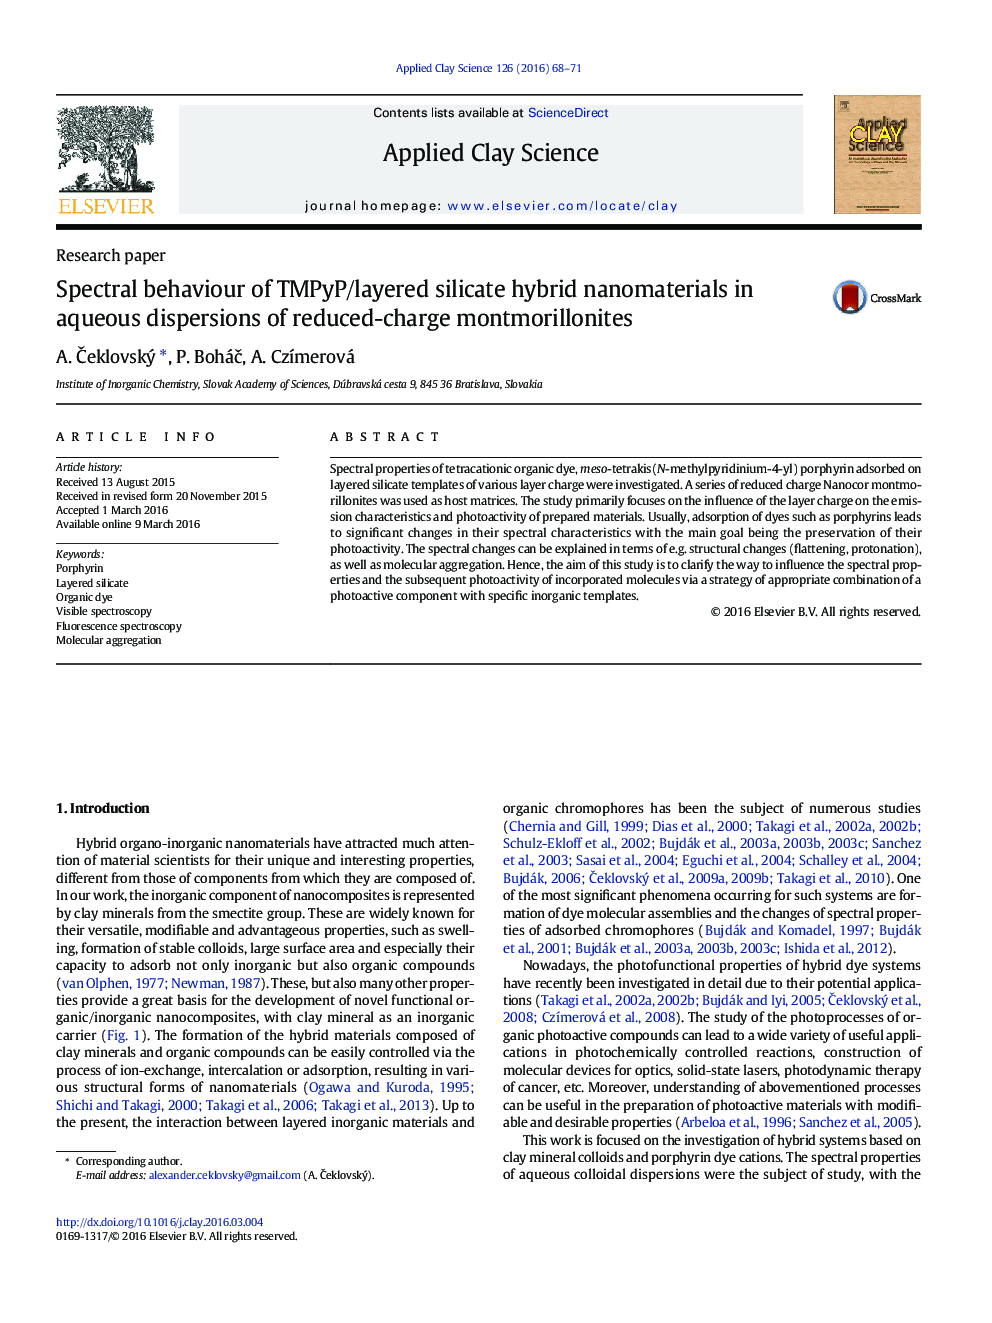 رفتار طیفی نانومواد هیبریدی سیلیکات TMPyP / لایه ای در پراکندگی های آبی مونتموریلونیت های کاهش یافته